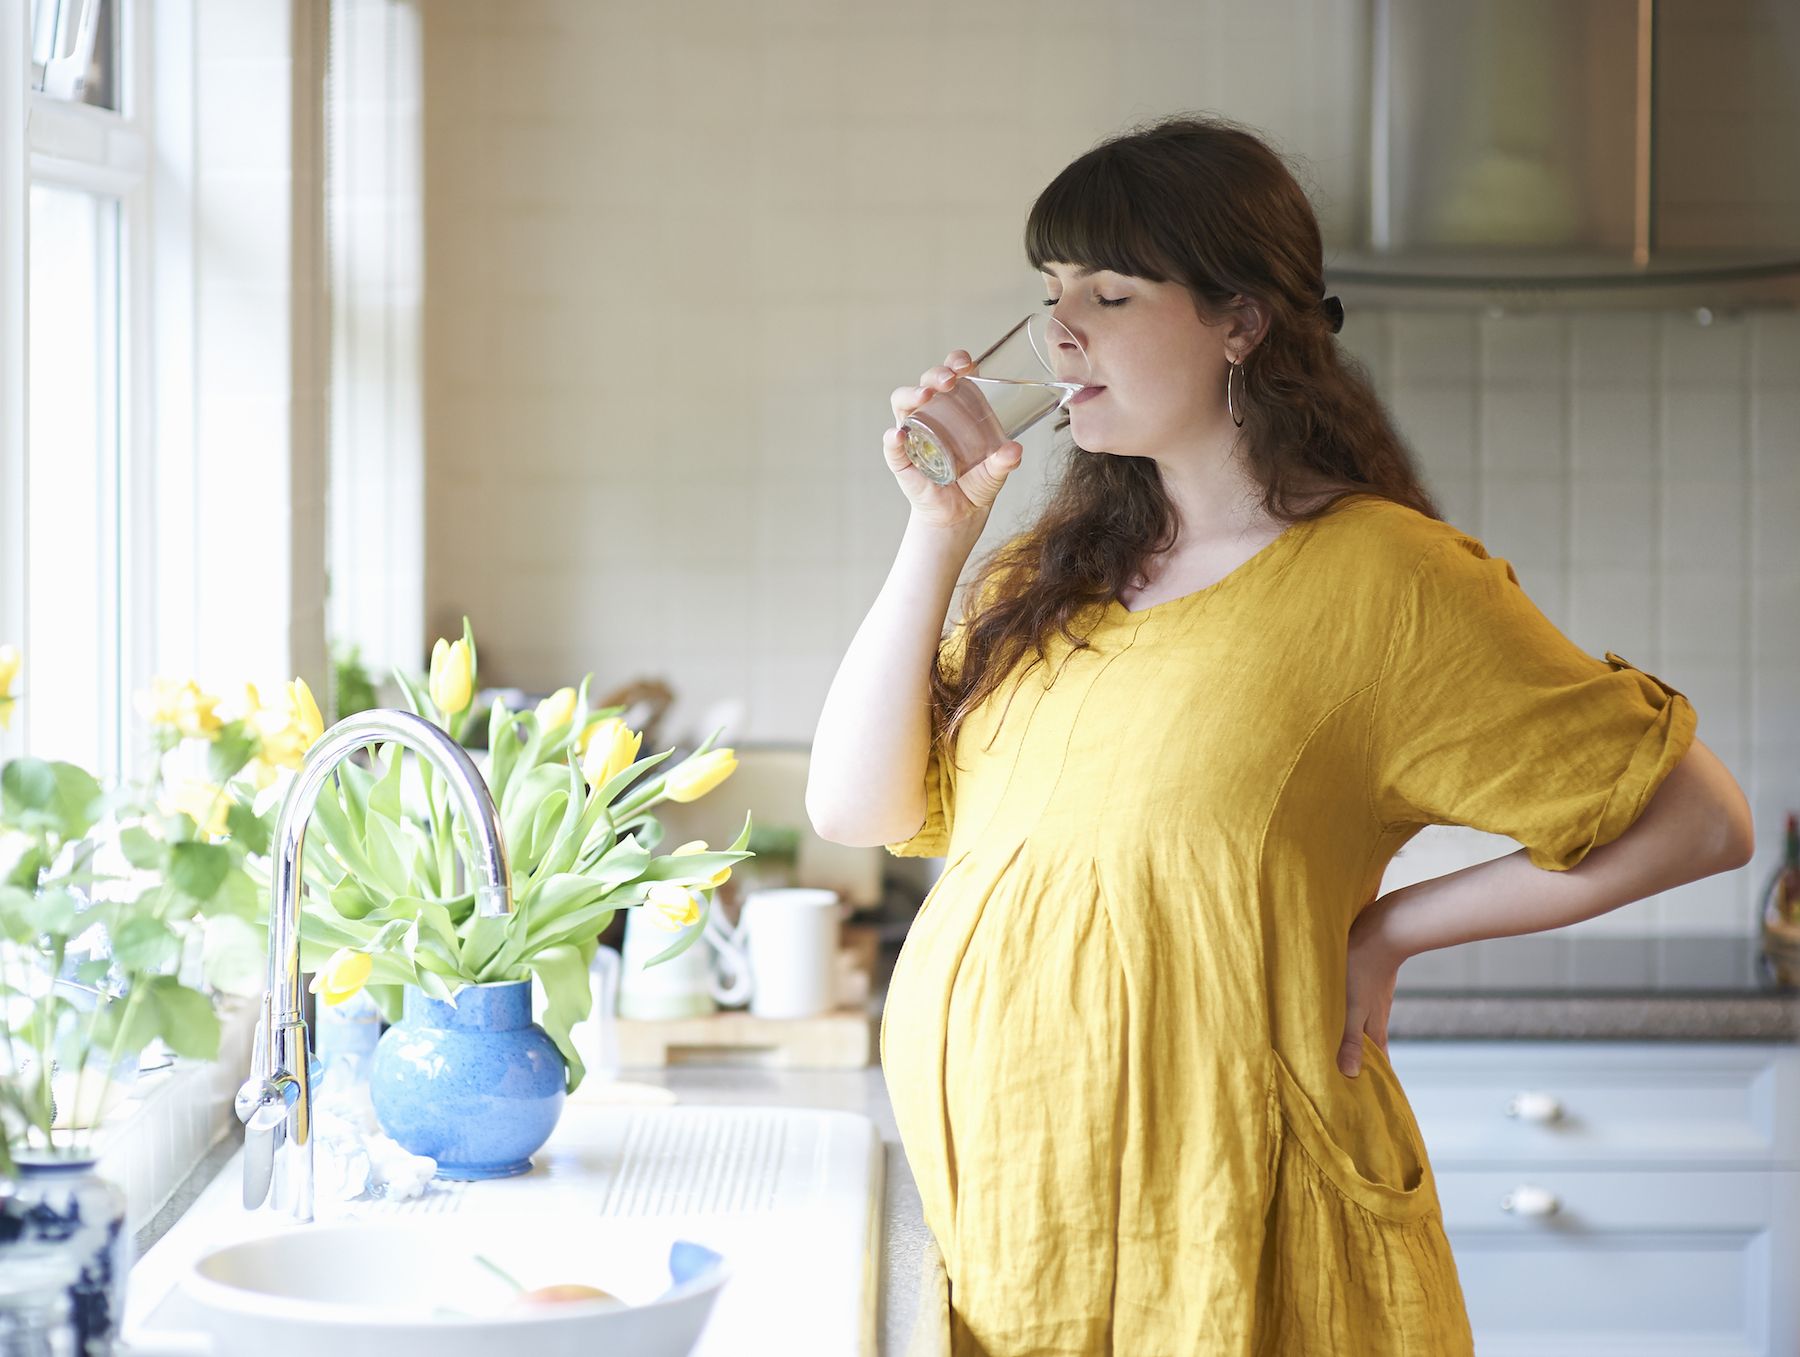 Tehotná žena pije vodu v kuchyni